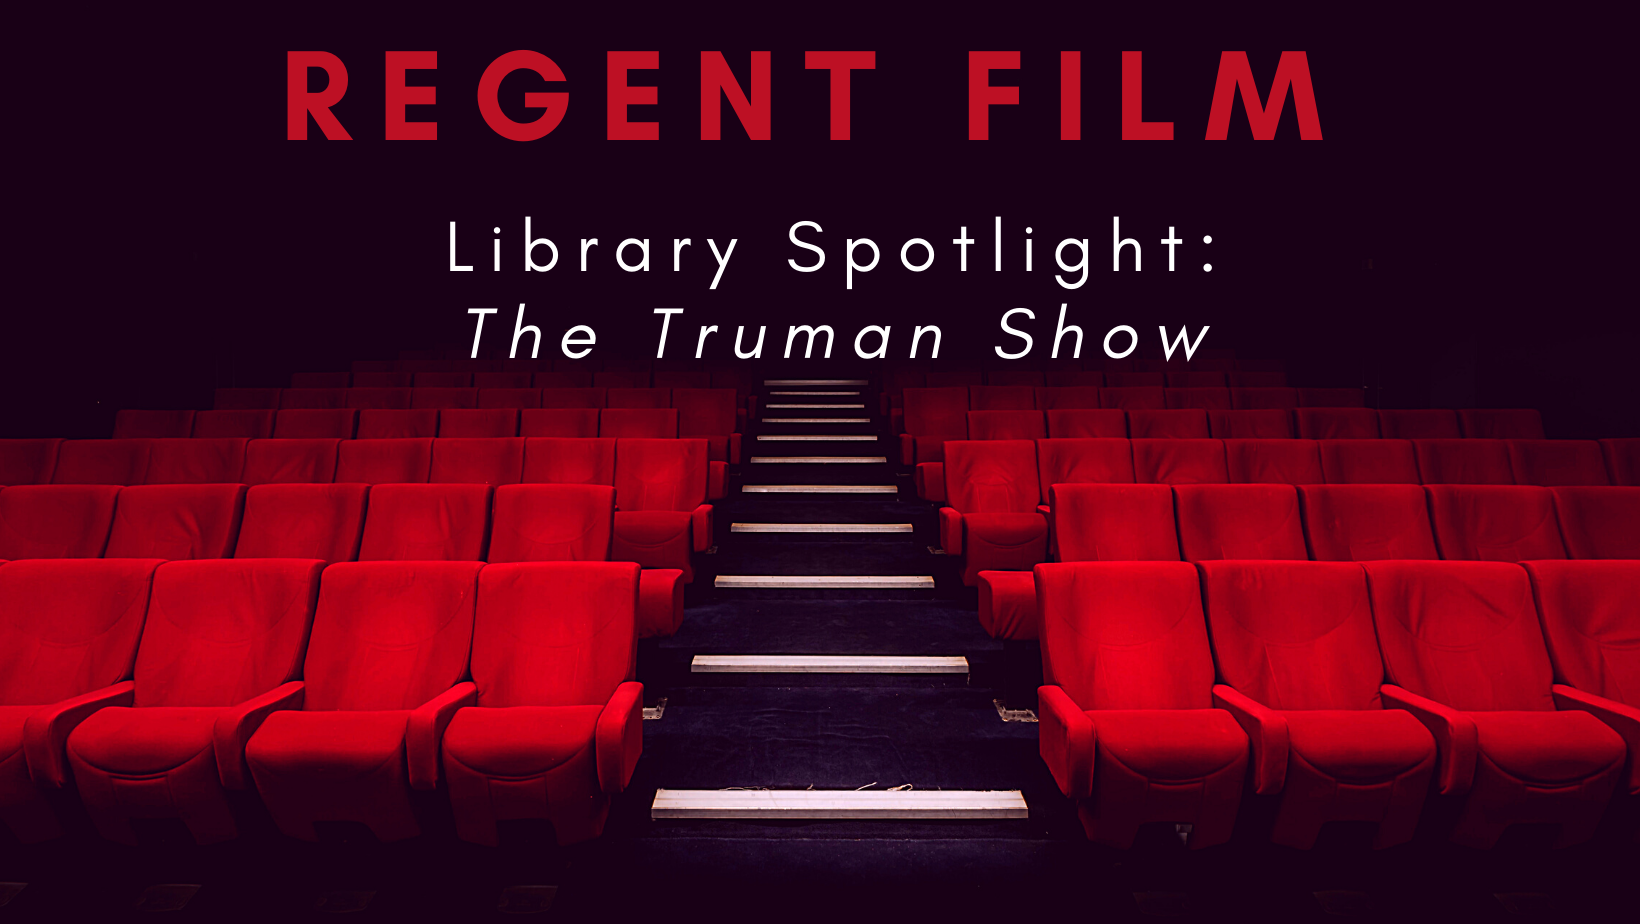 The Truman Show  The truman show, Truman, Good movies